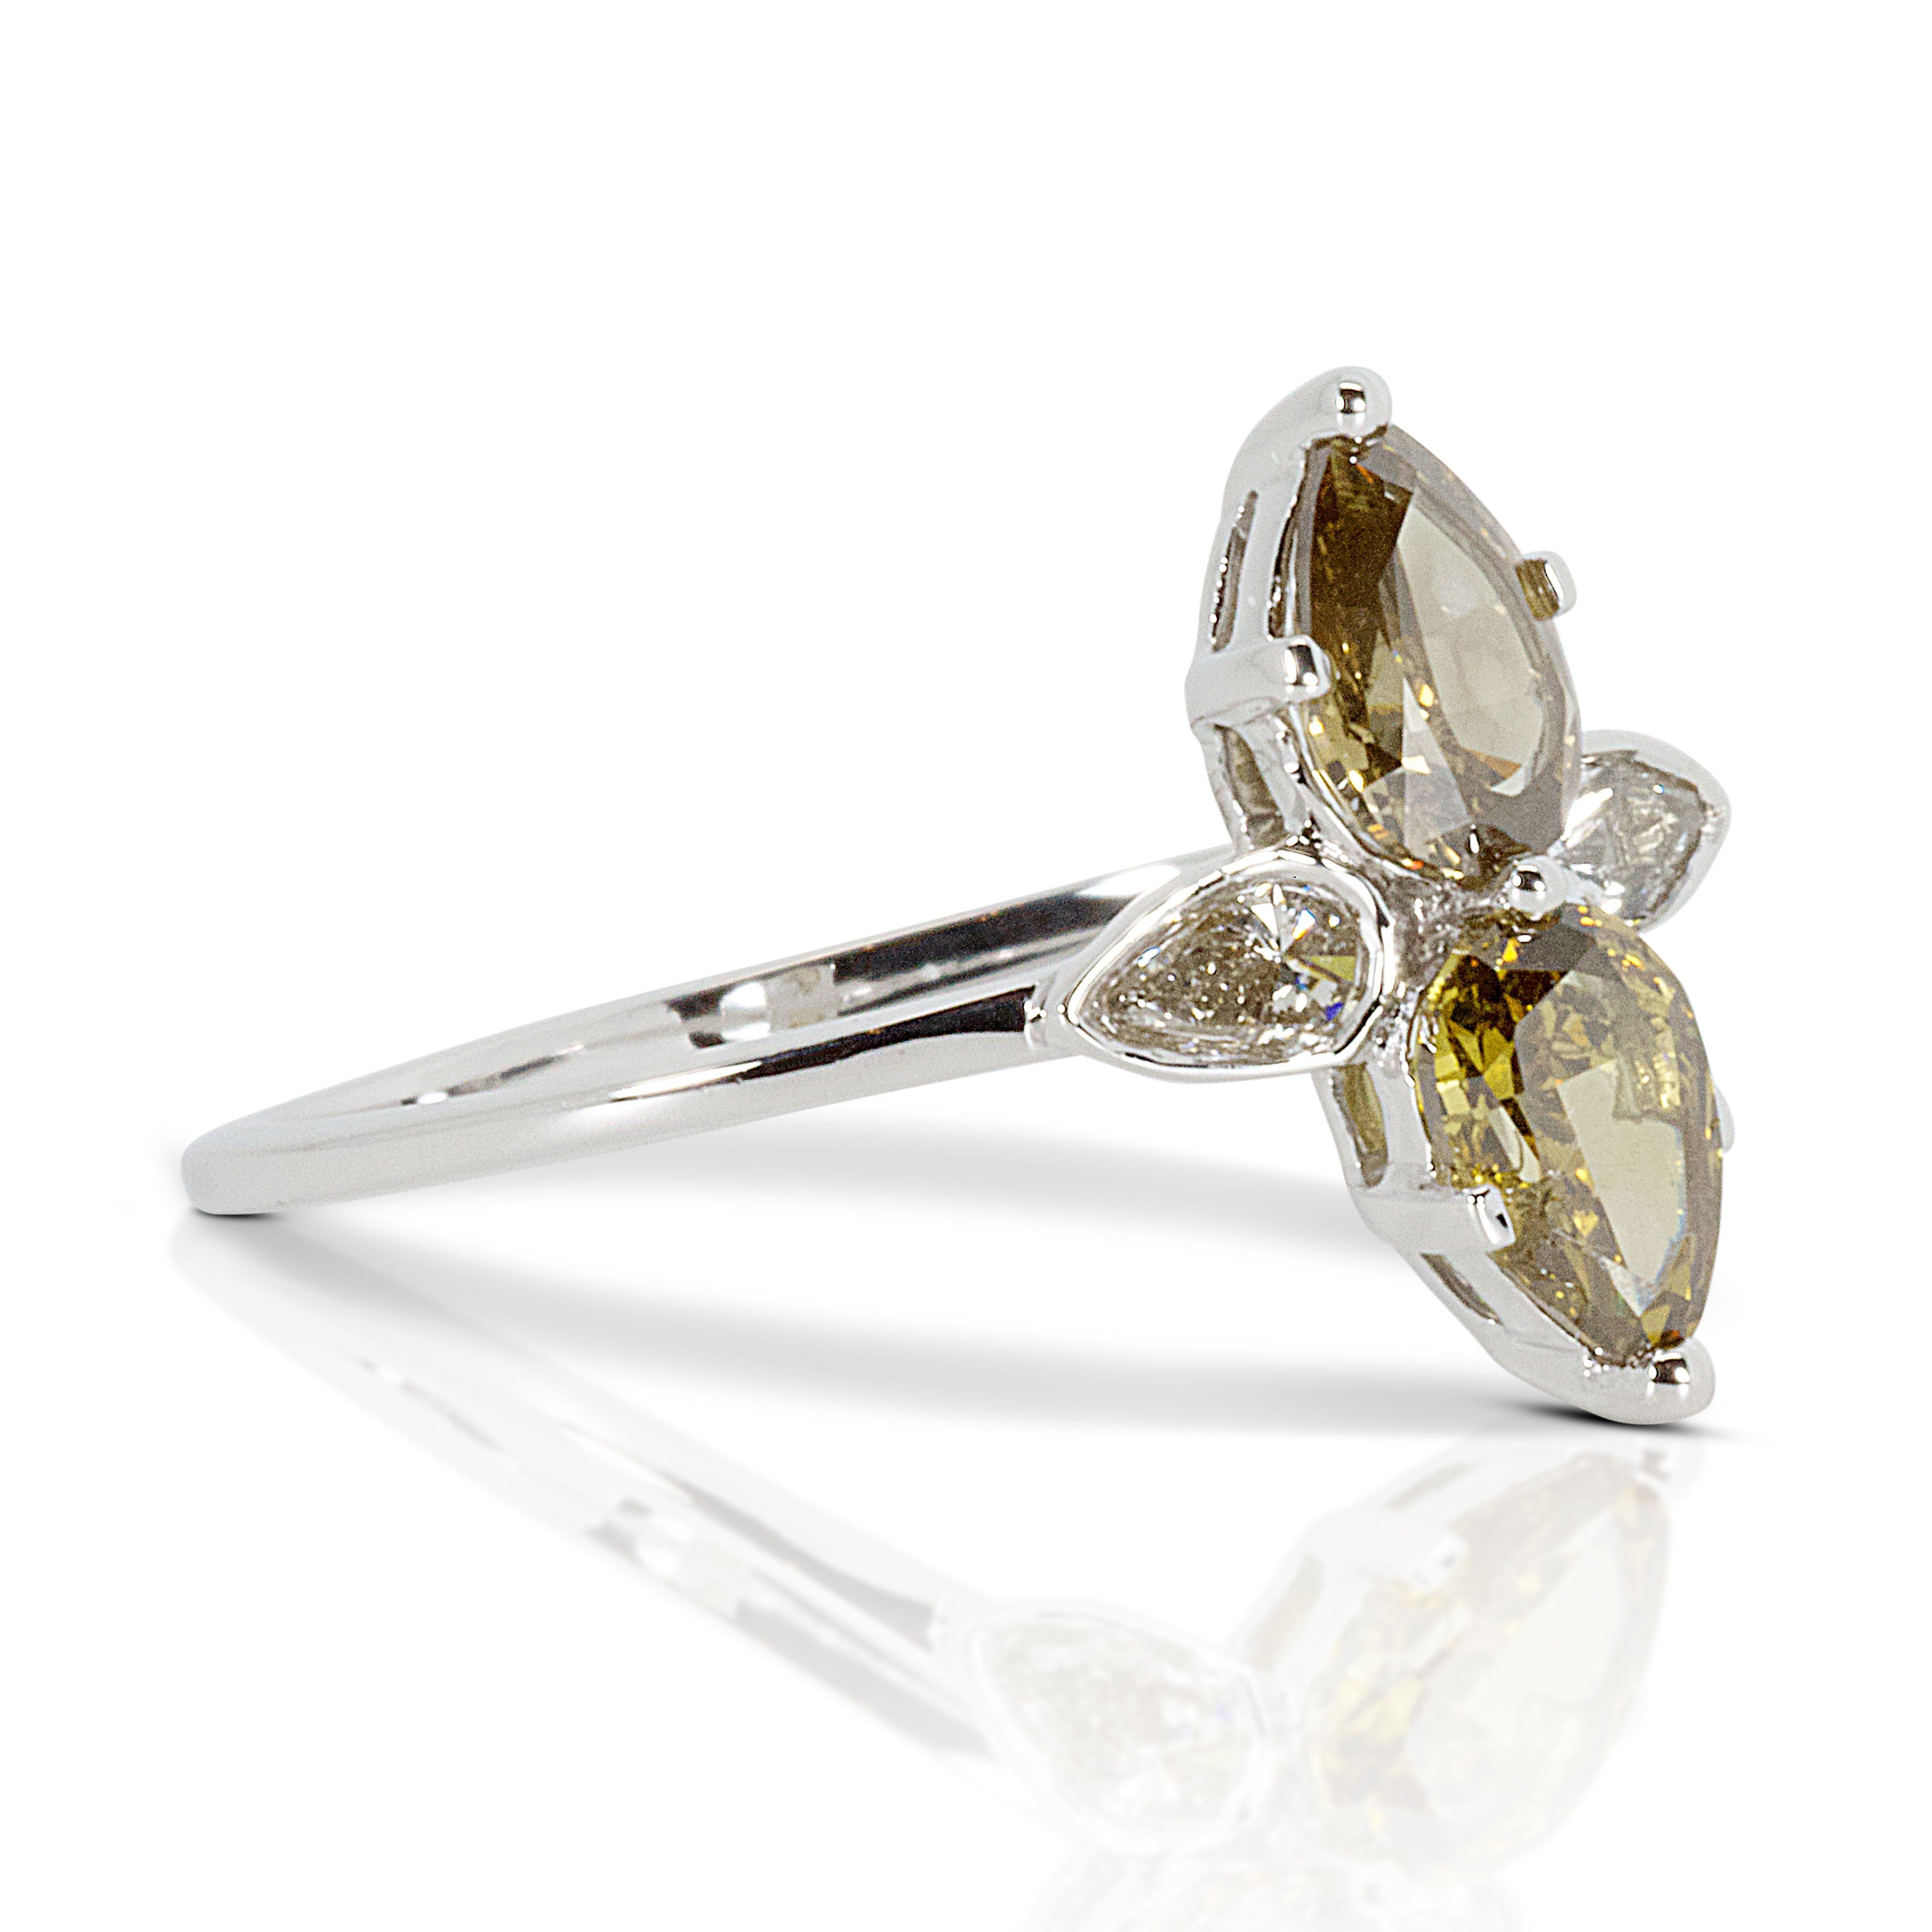 Elegant 18k White Gold Ring with 1.13 ct Natural Diamonds- NGI cert For Sale 3